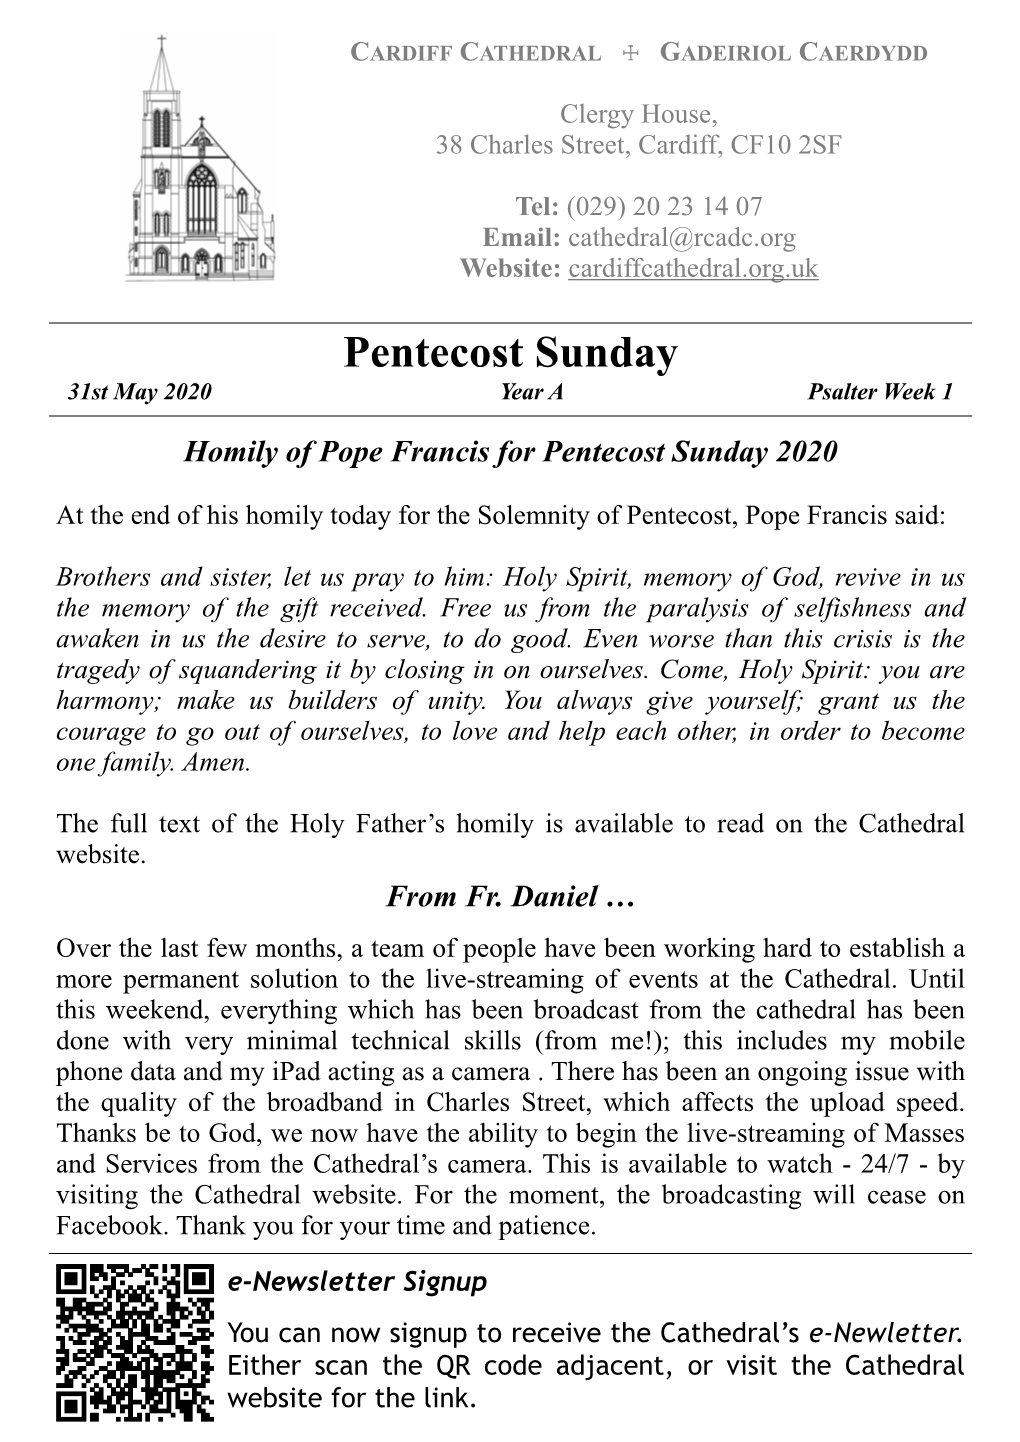 31St May 2020 – Pentecost Sunday